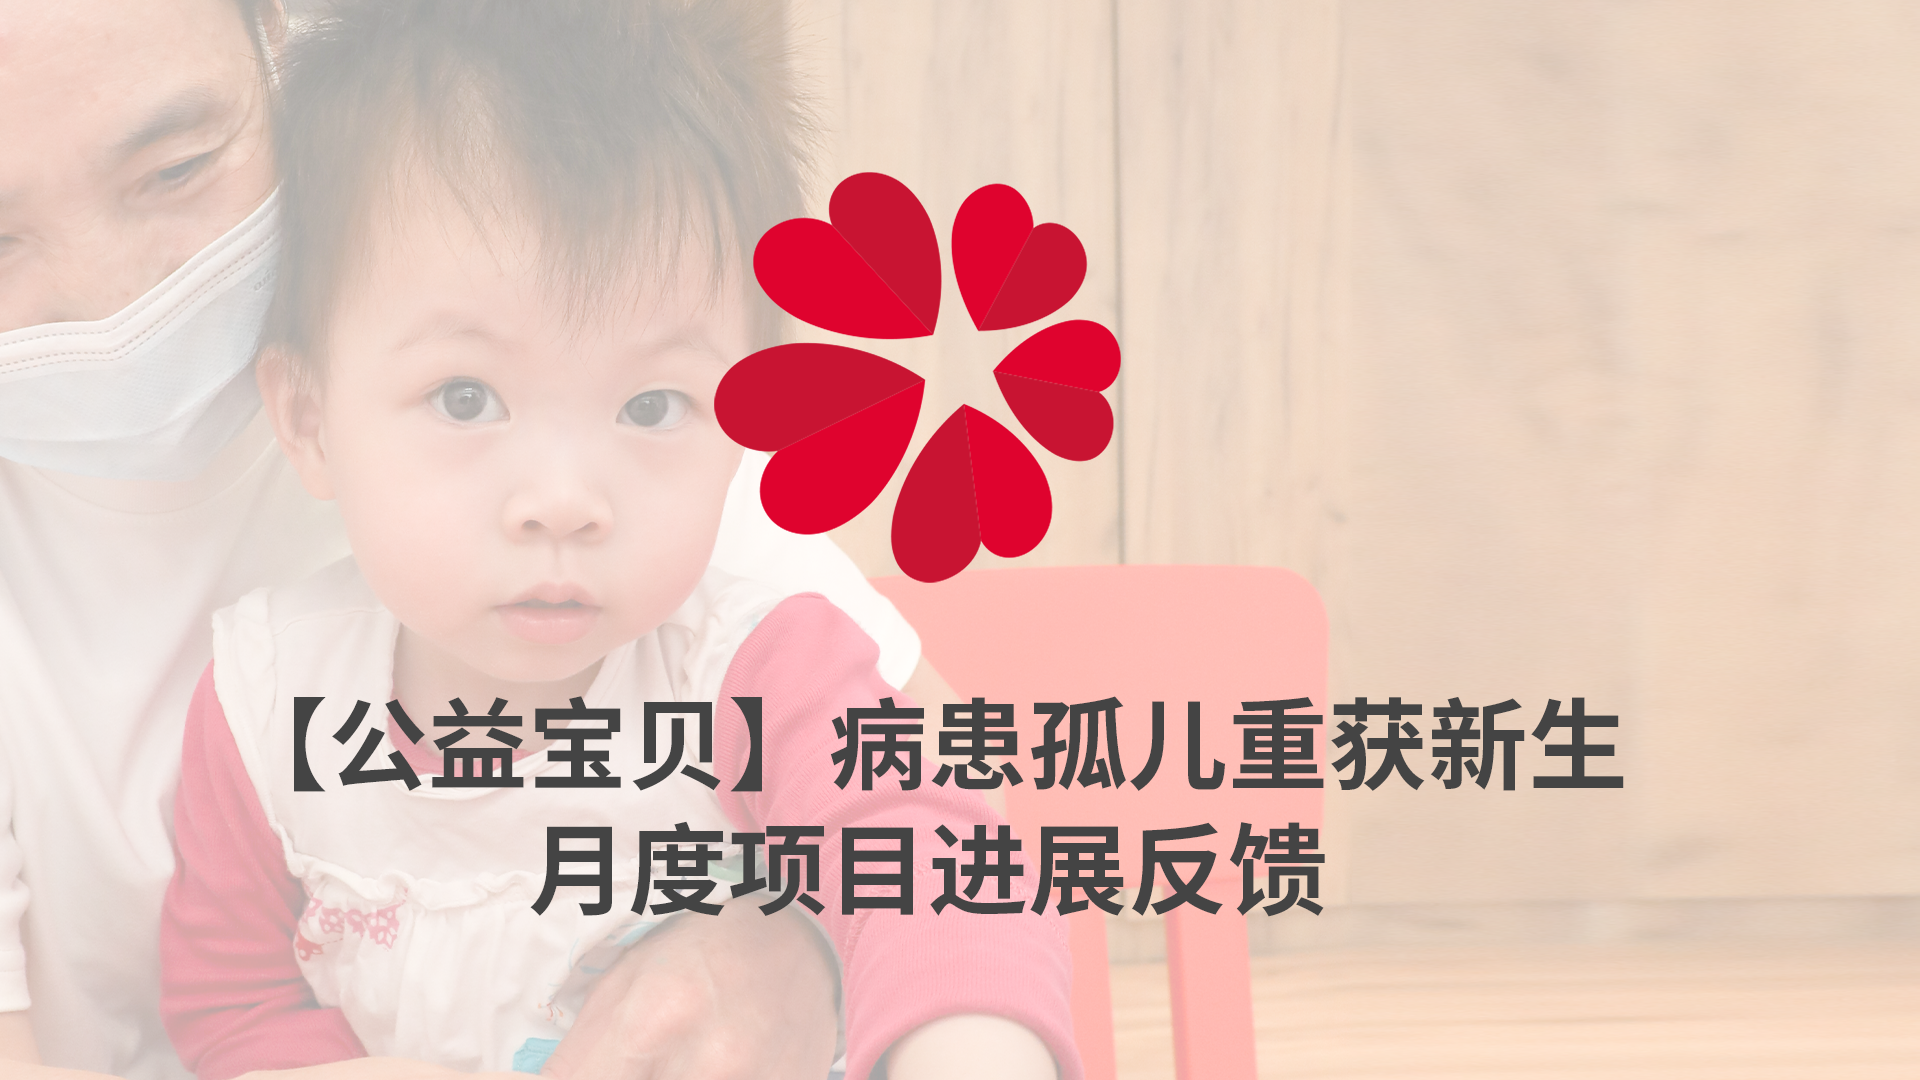 【XIN 益佰项目】病患孤儿重获新生 2023 年 9 月项目进展反馈